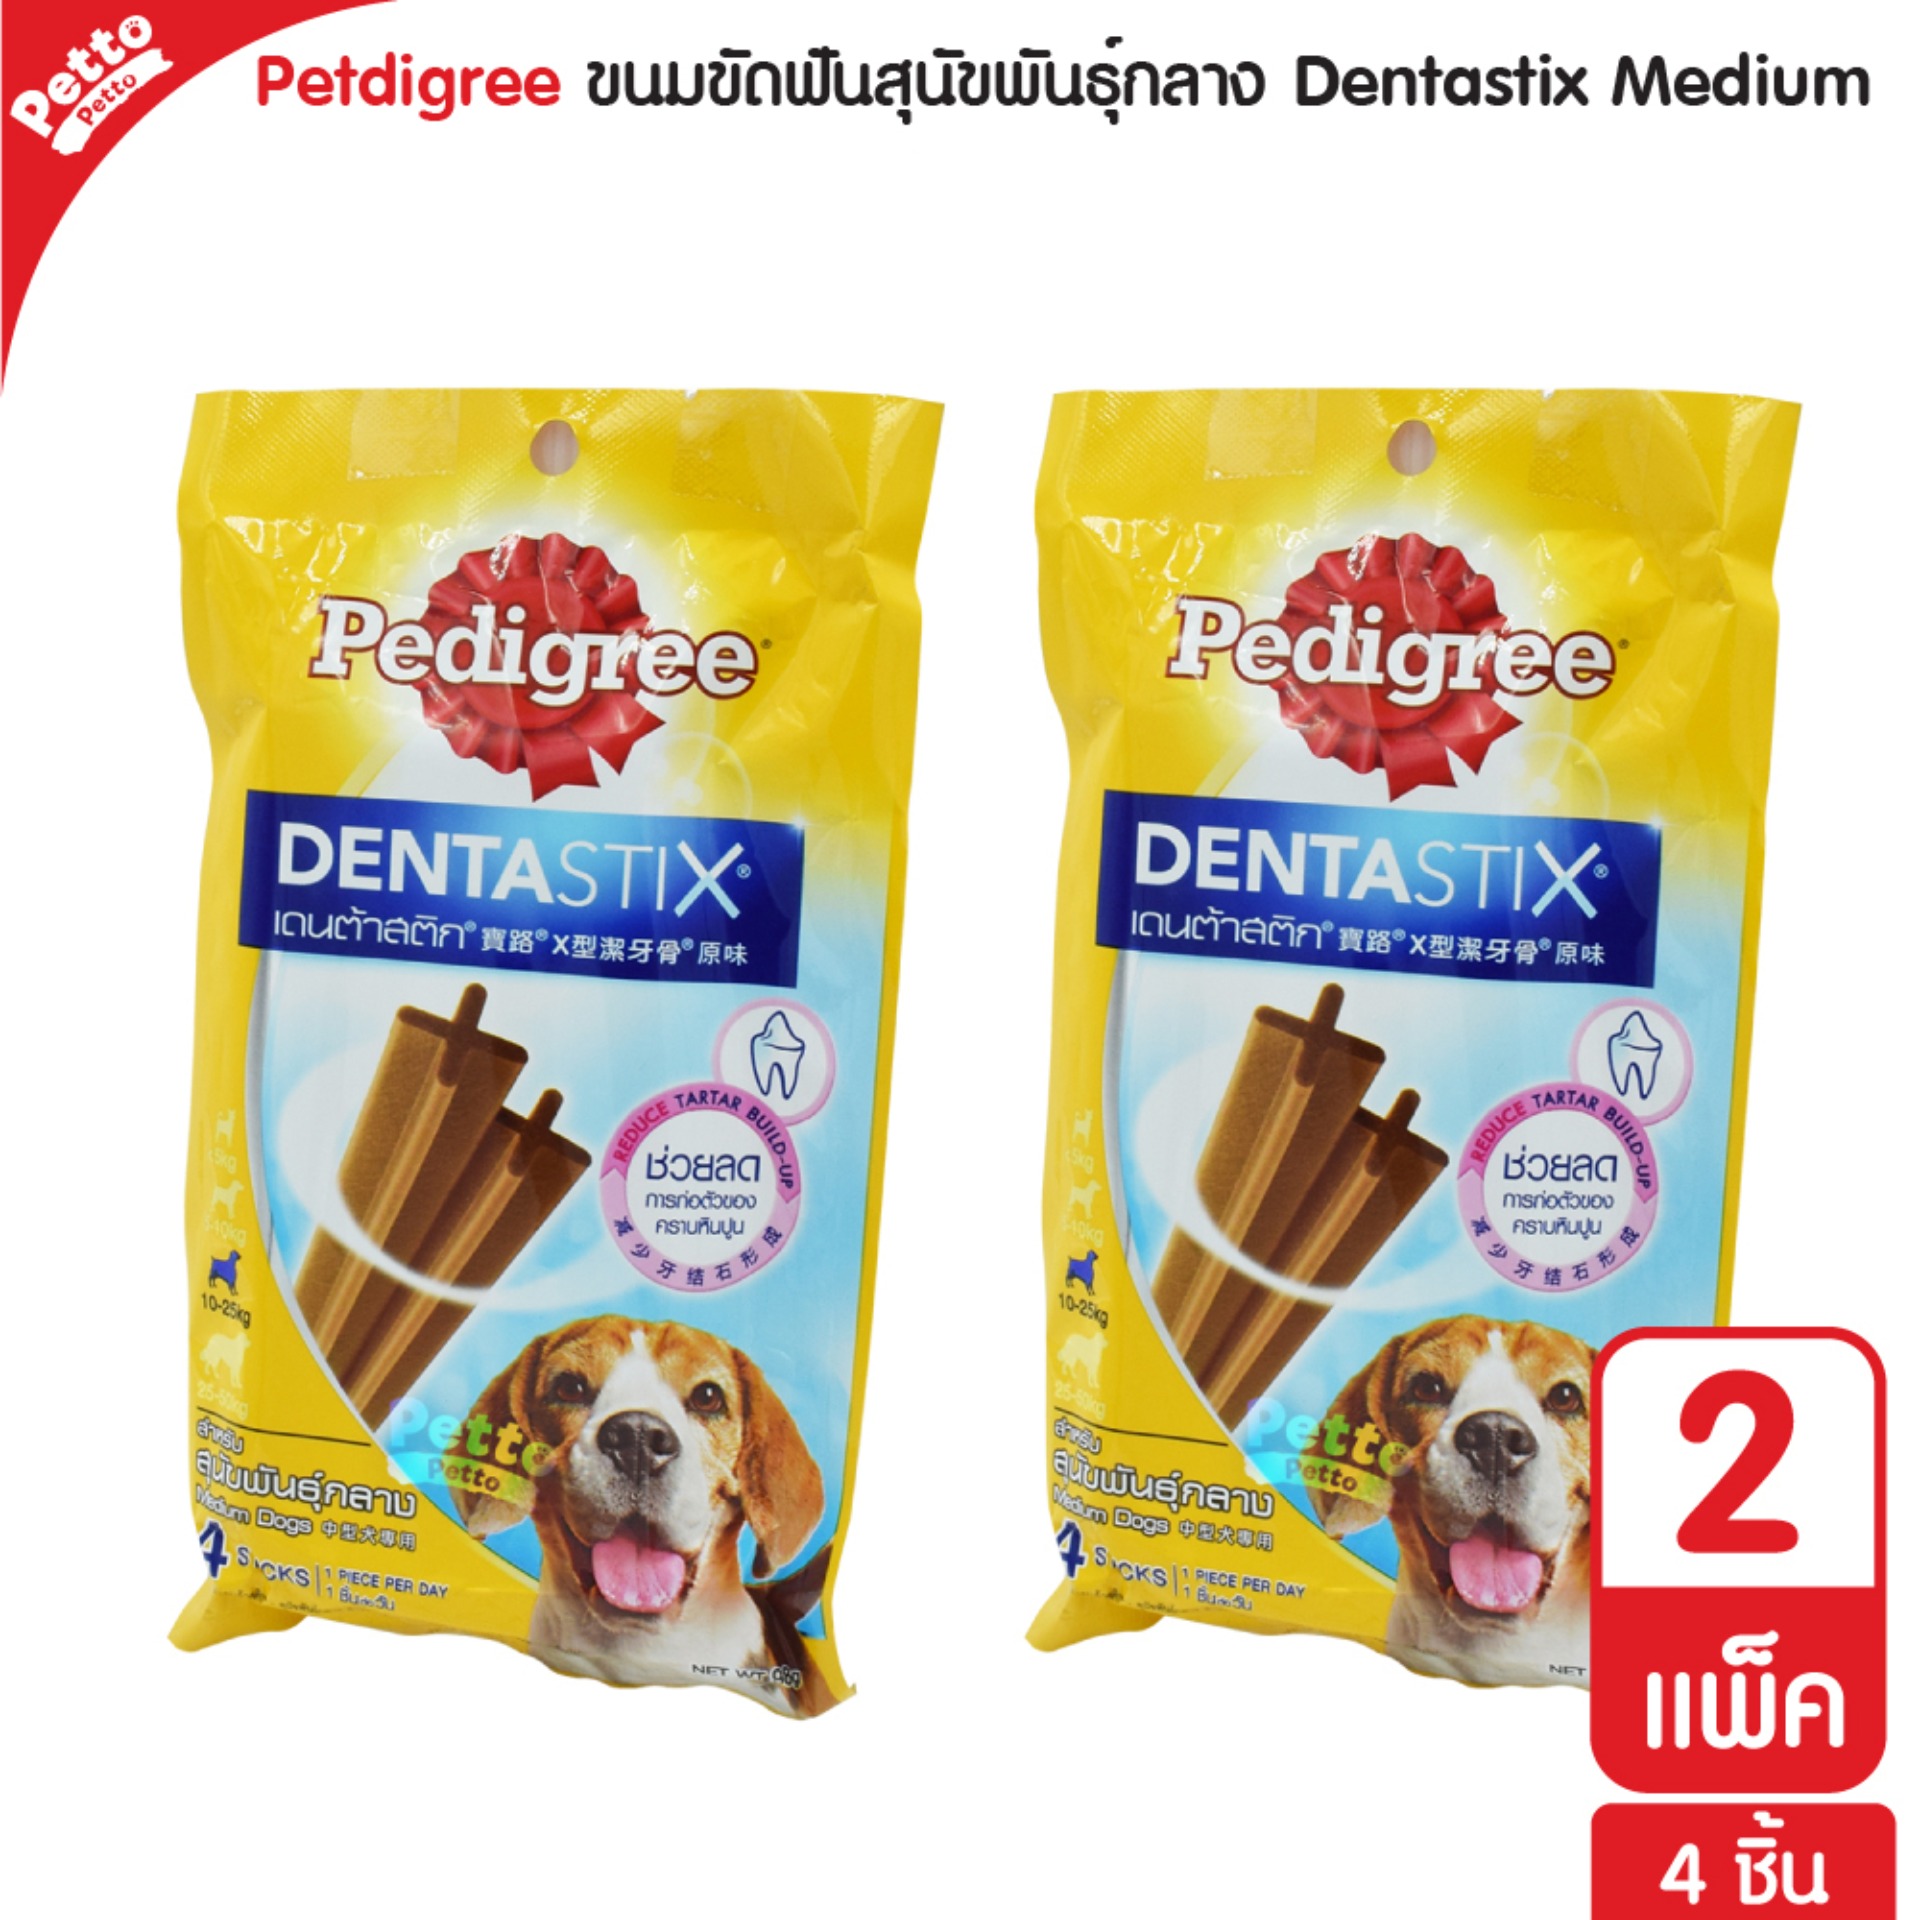 Pedigree Dentastix ขนมสุนัข ขัดฟัน ช่วยลดคราบหินปูน สำหรับสุนัขพันธุ์กลาง (4 ชิ้น/แพ็ค) - 2 แพ็ค